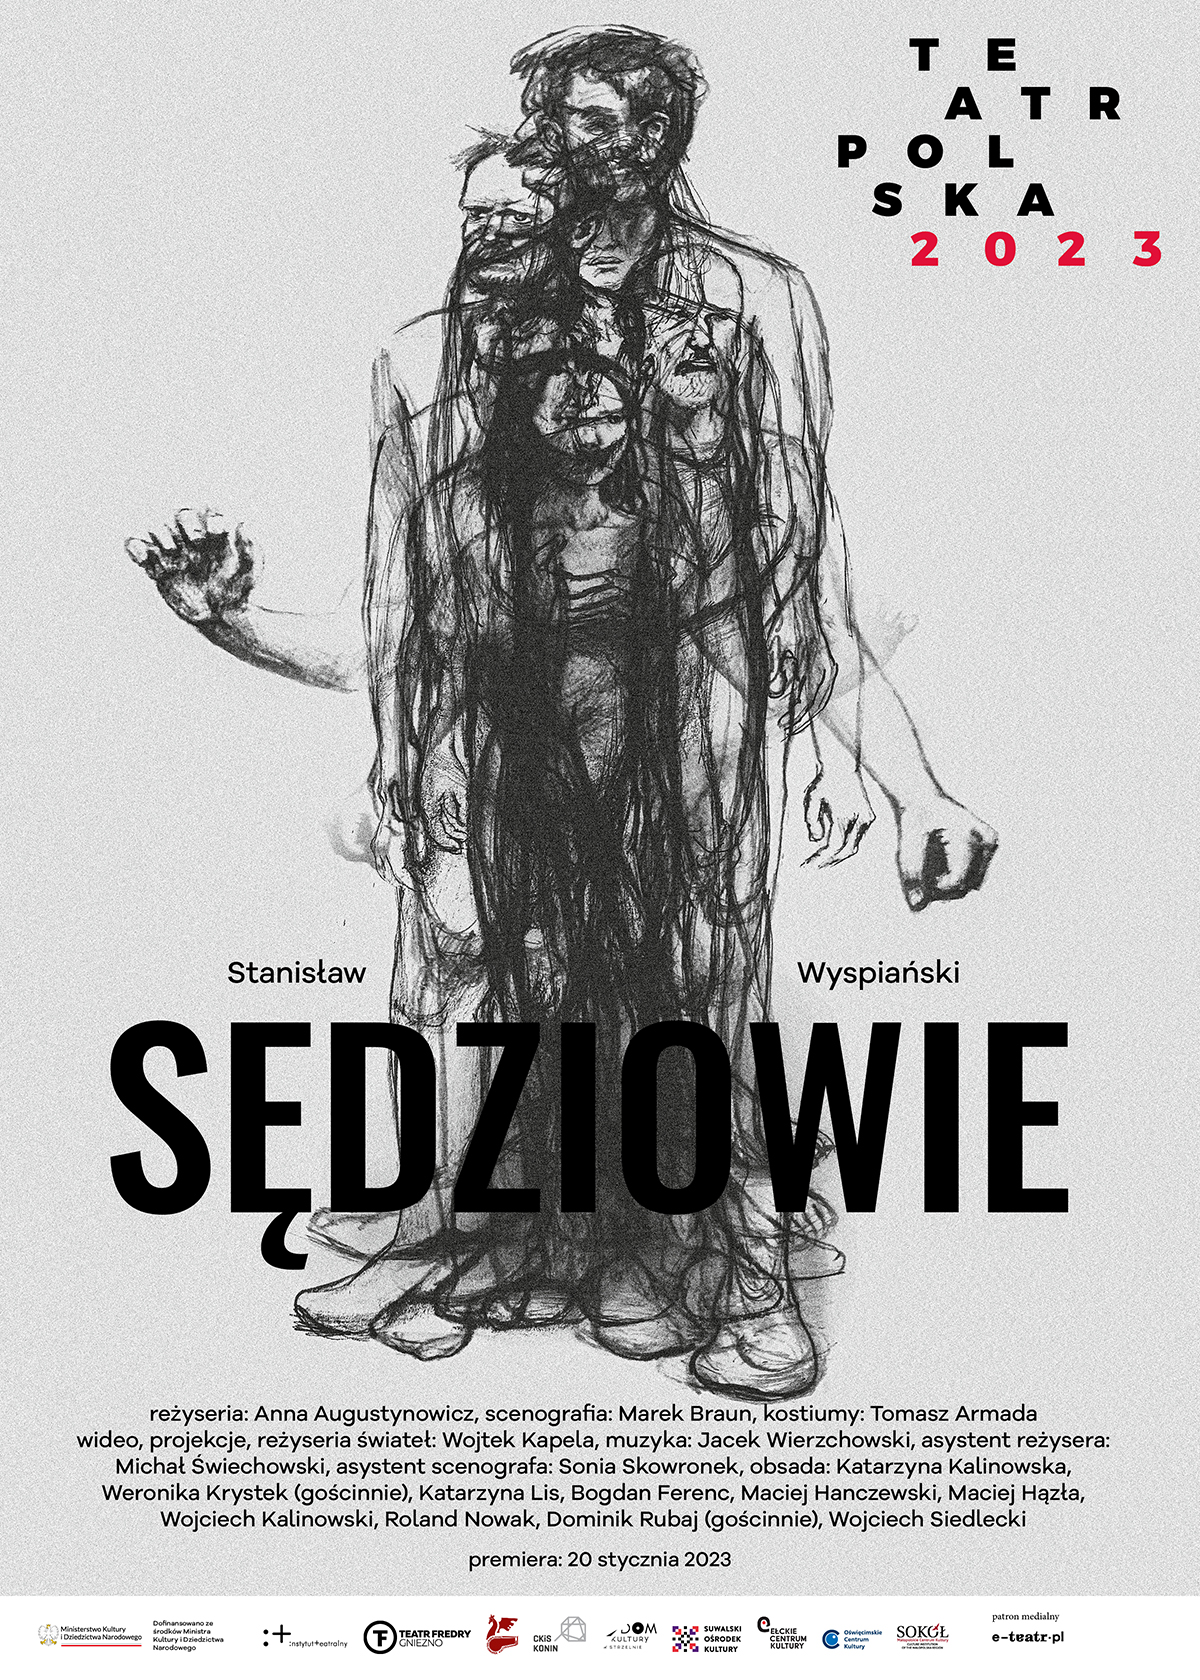 Teatr Polska 2023 - performance "I giudici"